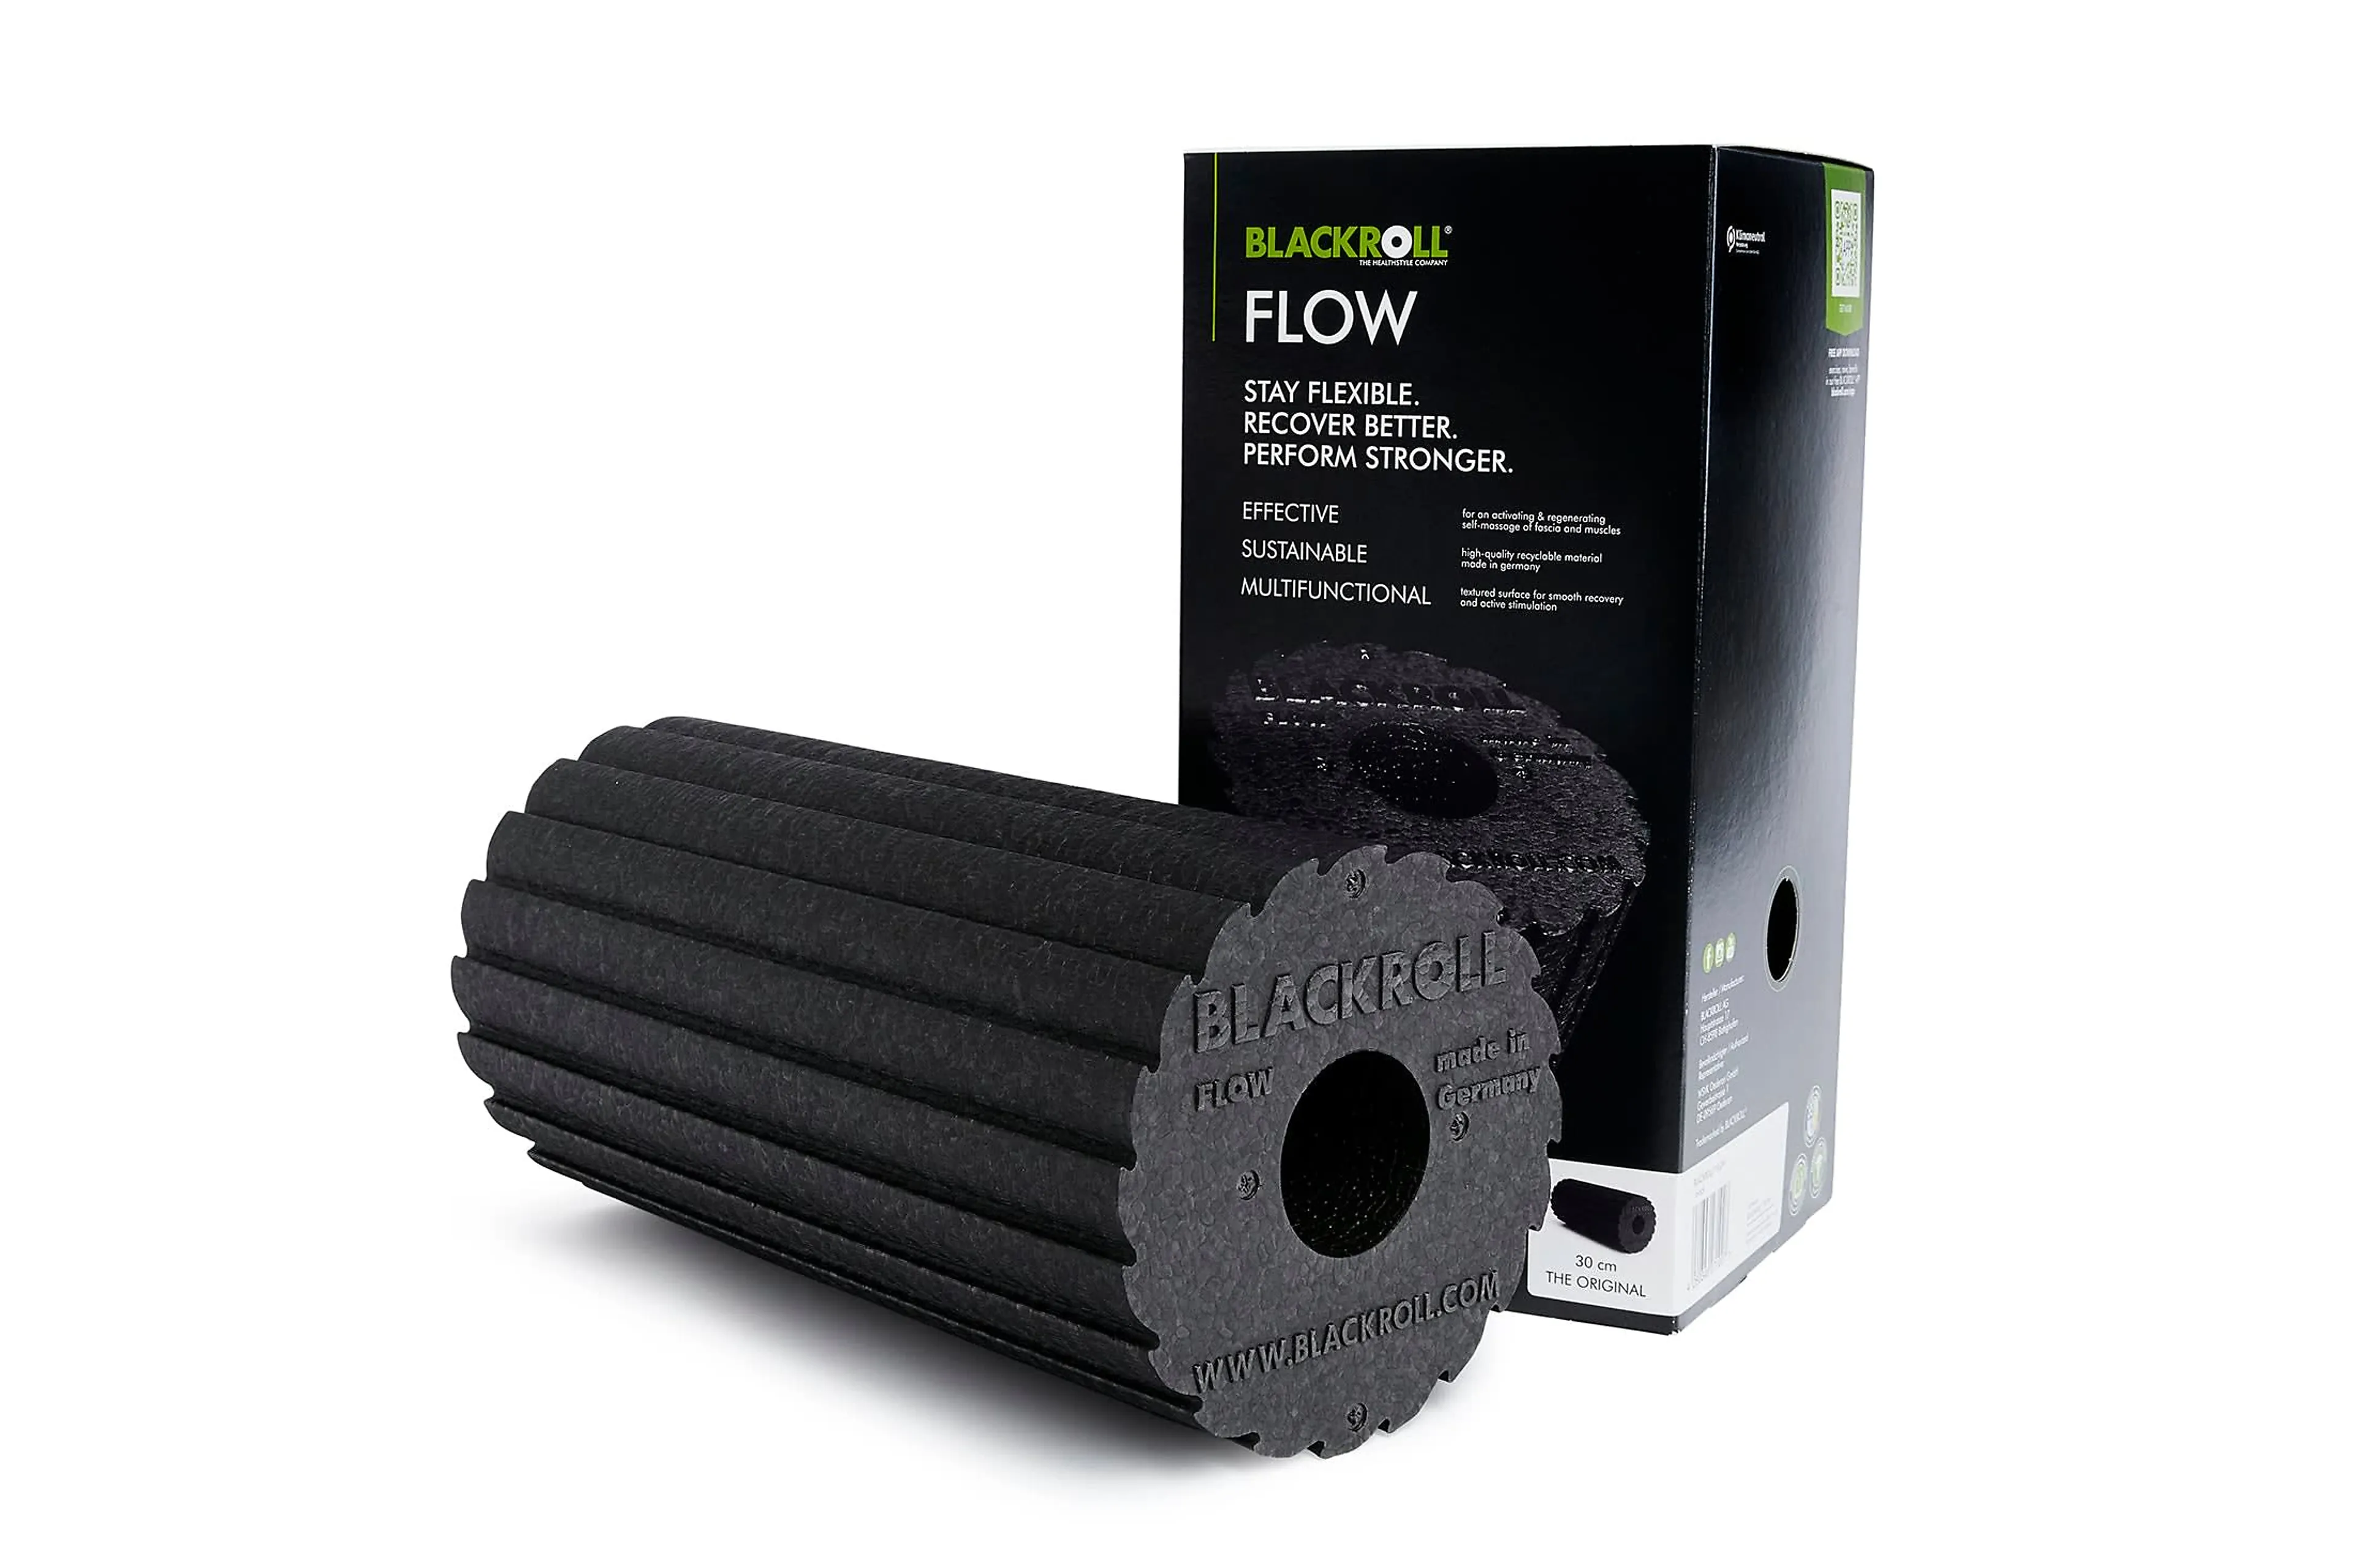 FLOW STANDARD foam roller